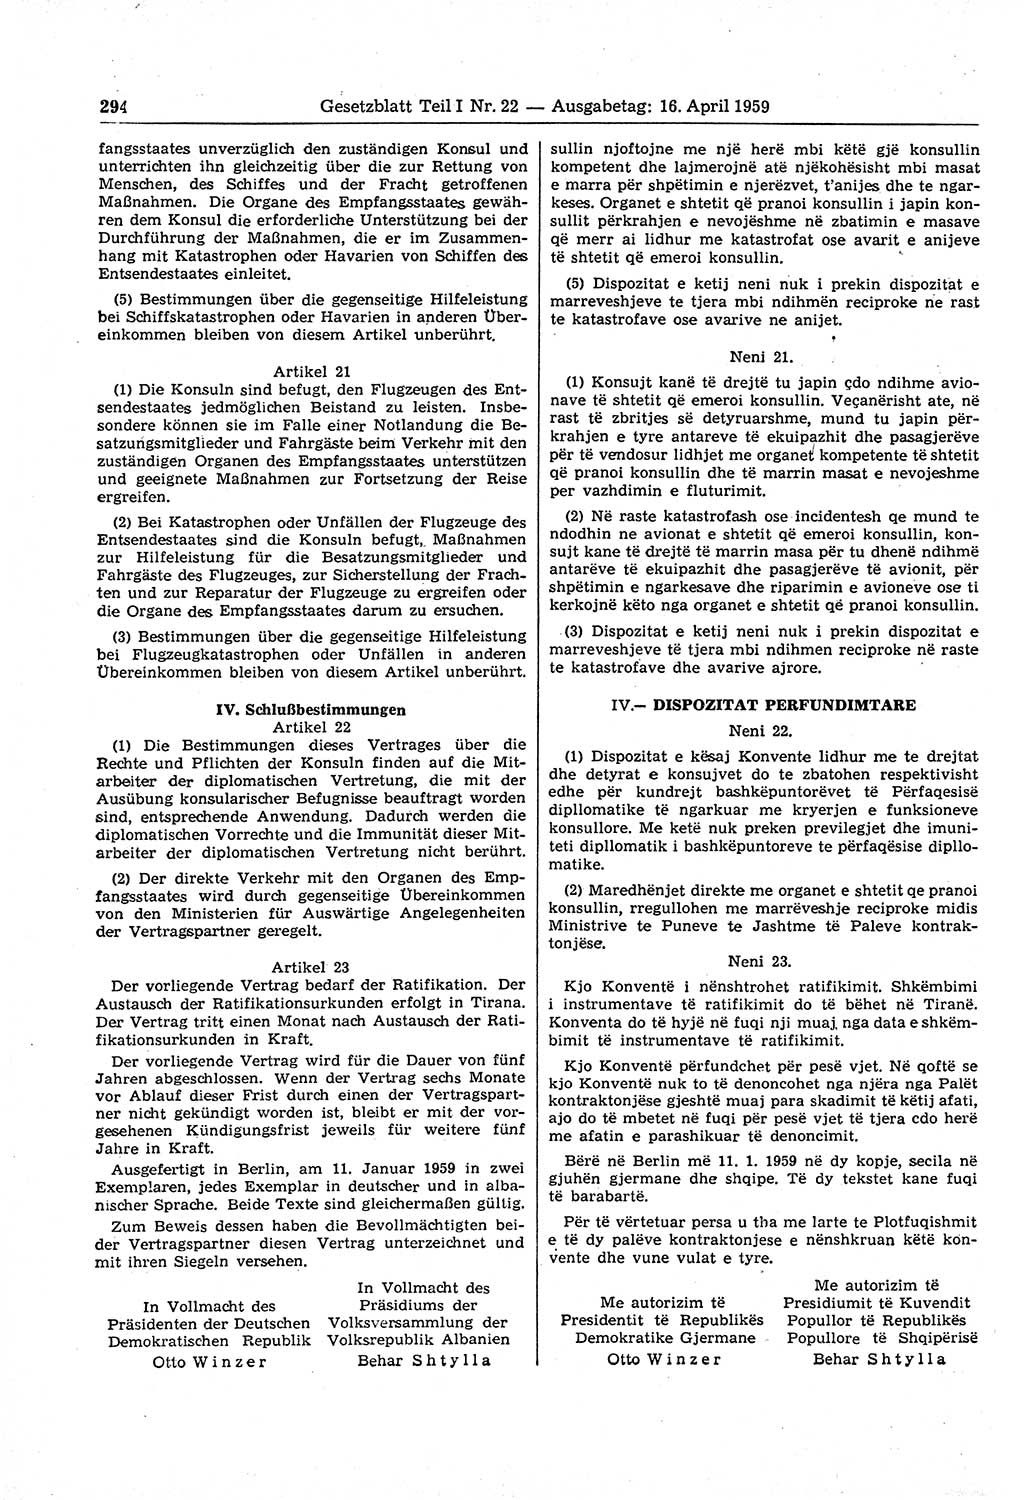 Gesetzblatt (GBl.) der Deutschen Demokratischen Republik (DDR) Teil Ⅰ 1959, Seite 294 (GBl. DDR Ⅰ 1959, S. 294)